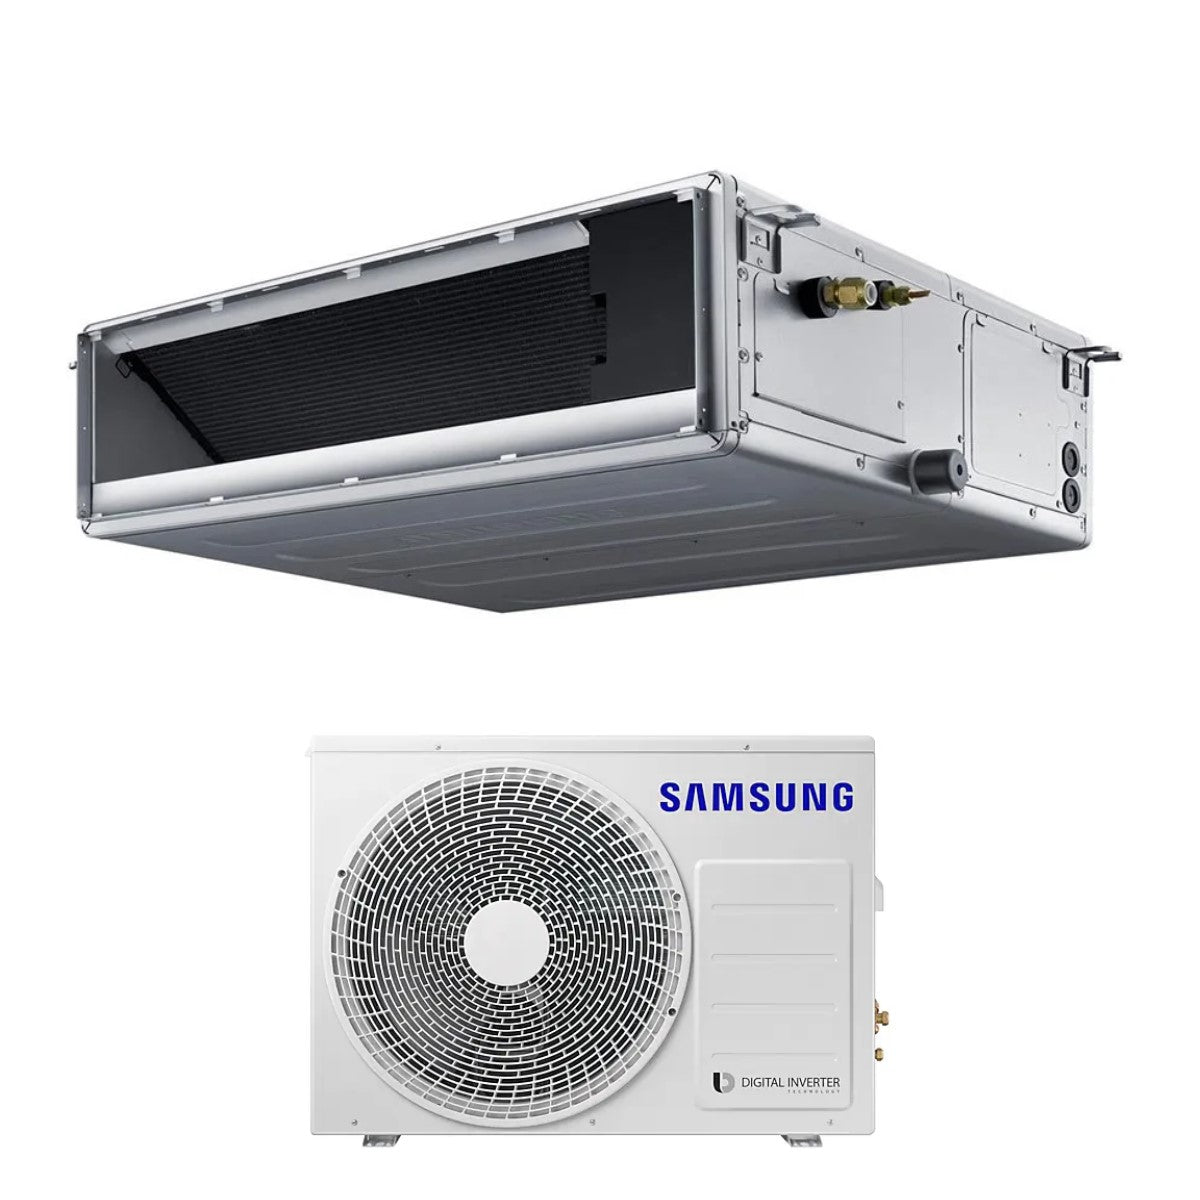 immagine-1-samsung-climatizzatore-condizionatore-samsung-inverter-canalizzato-canalizzabile-media-prevalenza-18000-btu-ac052rnmdkgeu-r-32-wi-fi-optional-classe-aa